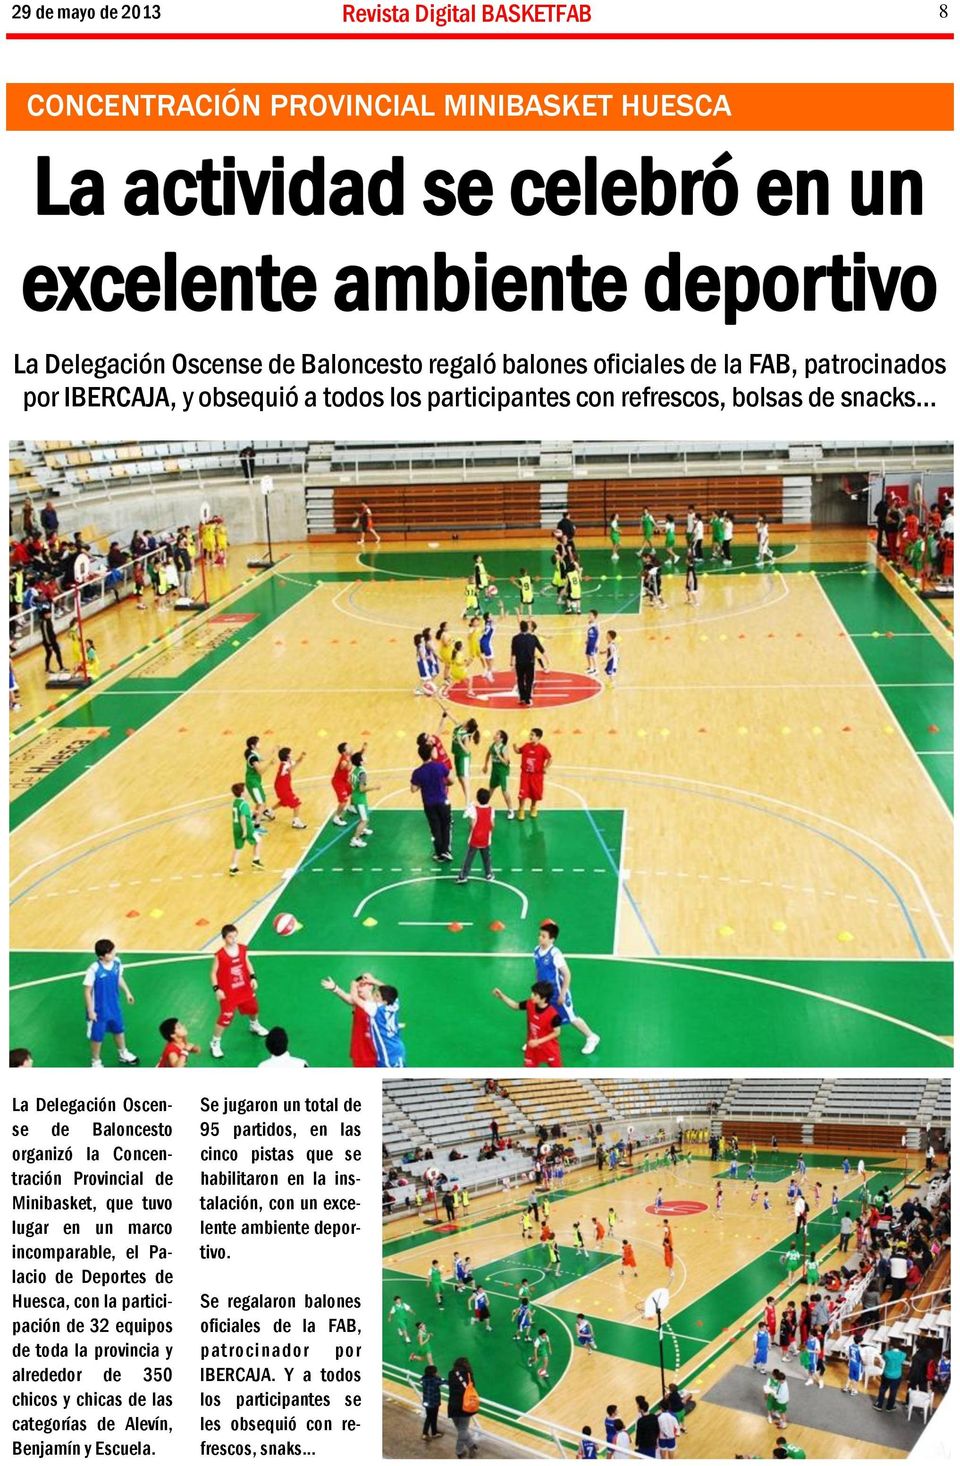 .. La Delegación Oscense de Baloncesto organizó la Concentración Provincial de Minibasket, que tuvo lugar en un marco incomparable, el Palacio de Deportes de Huesca, con la participación de 32